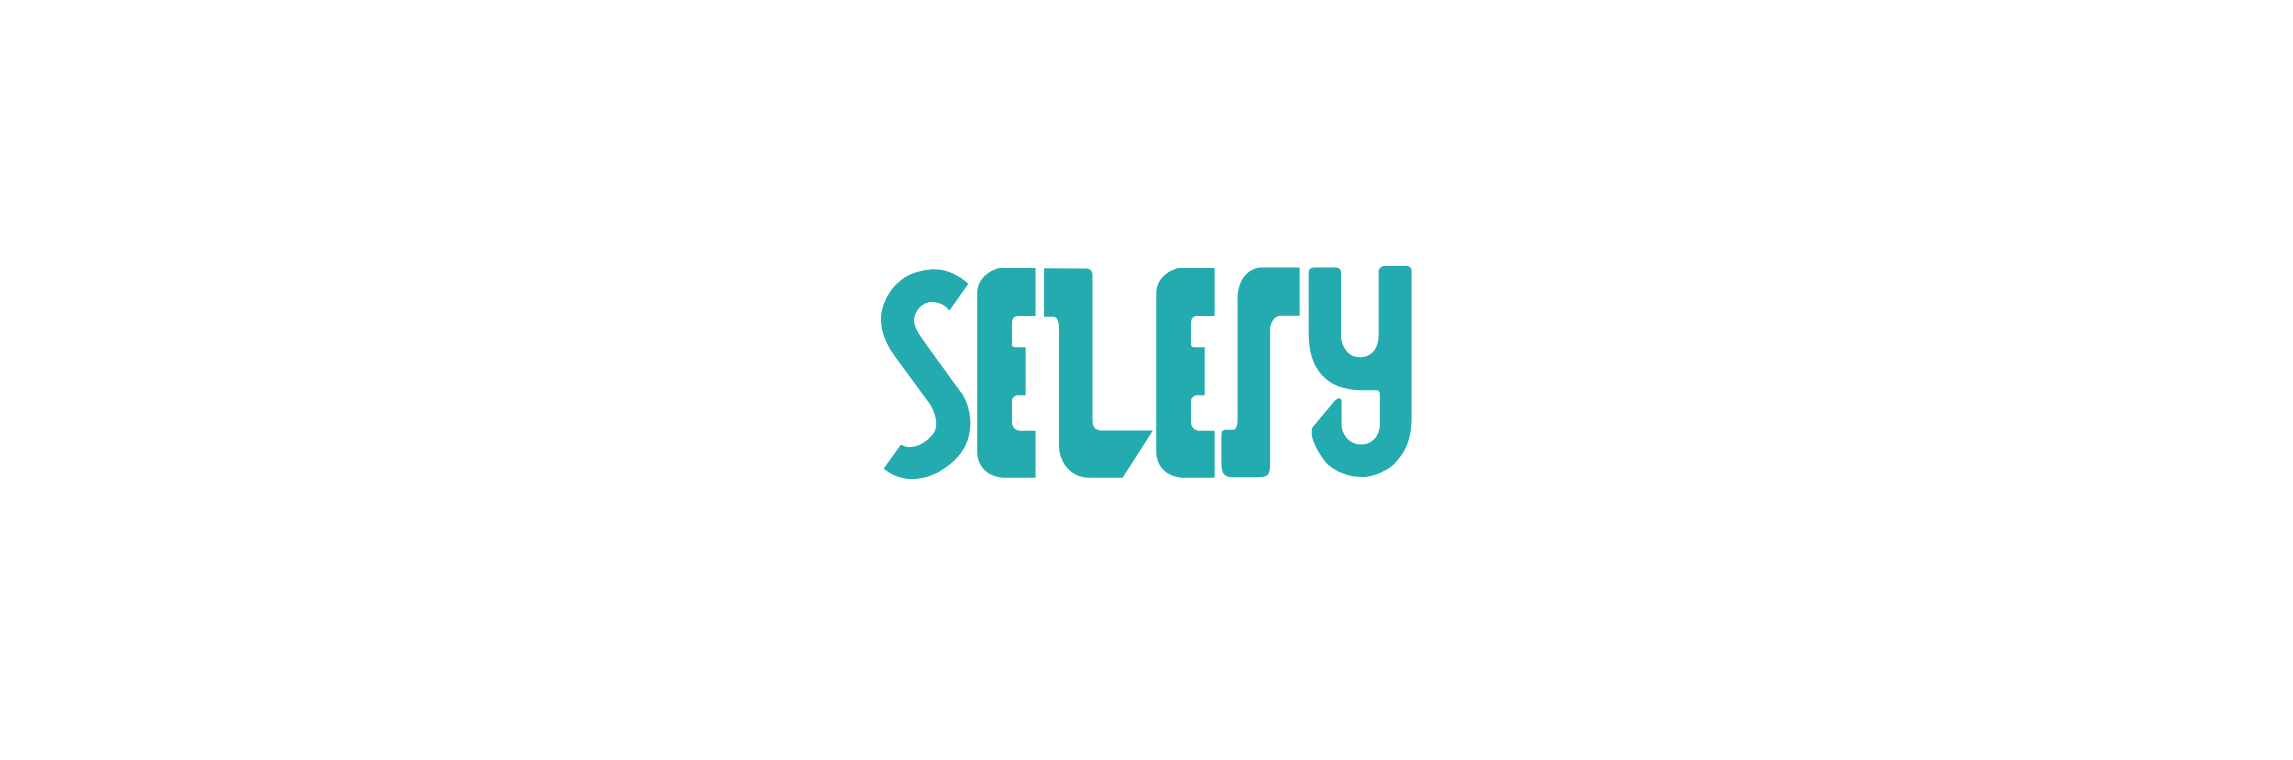 selery